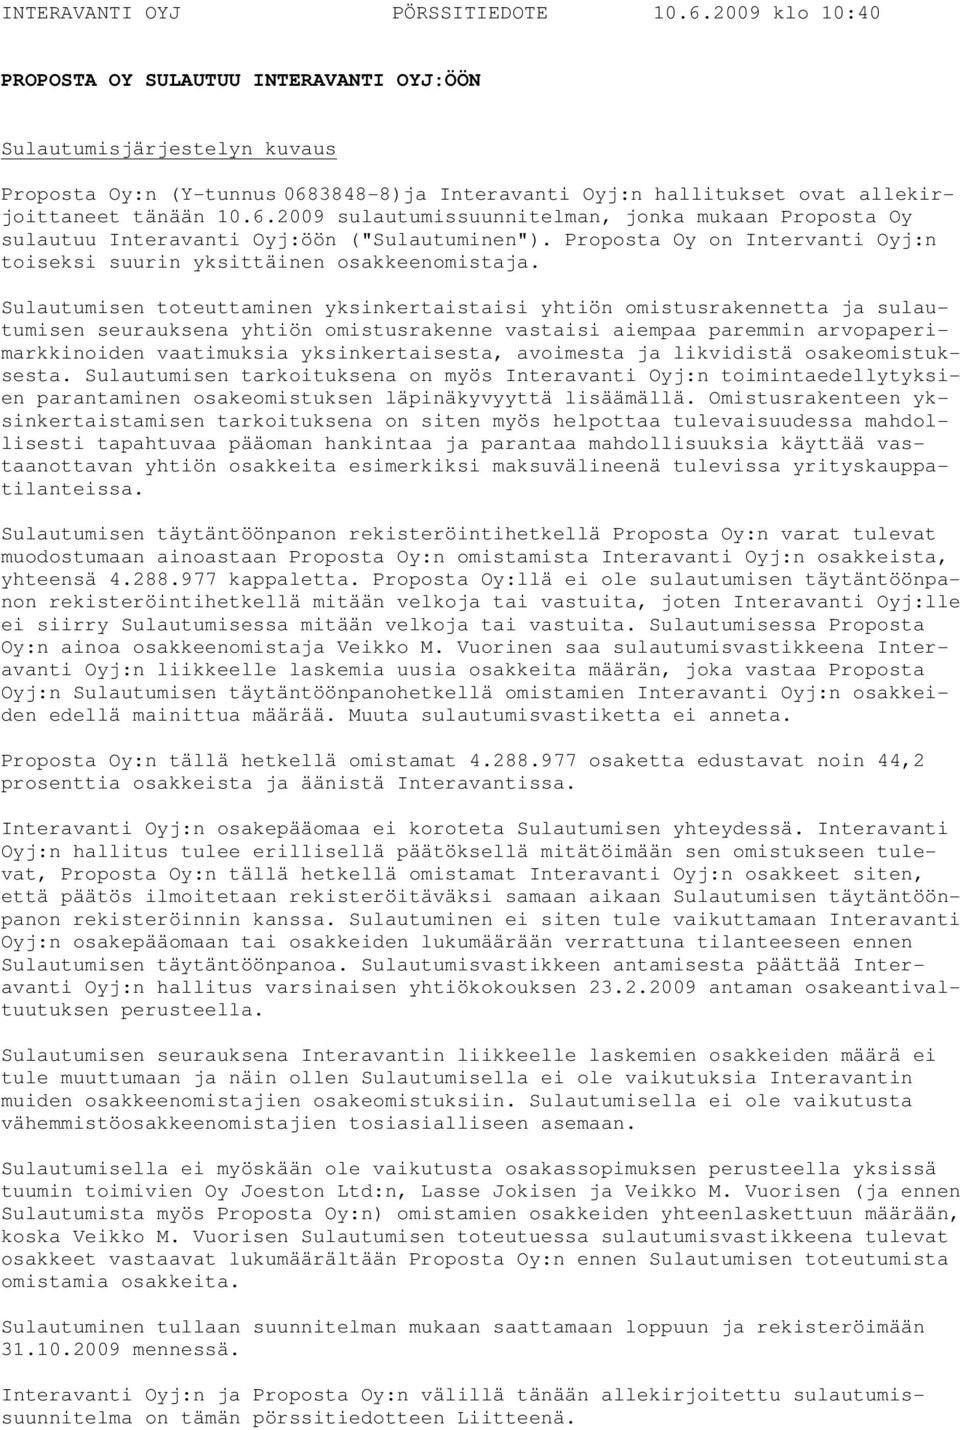 3848-8)ja Interavanti Oyj:n hallitukset ovat allekirjoittaneet tänään 10.6.2009 sulautumissuunnitelman, jonka mukaan Proposta Oy sulautuu Interavanti Oyj:öön ("Sulautuminen").